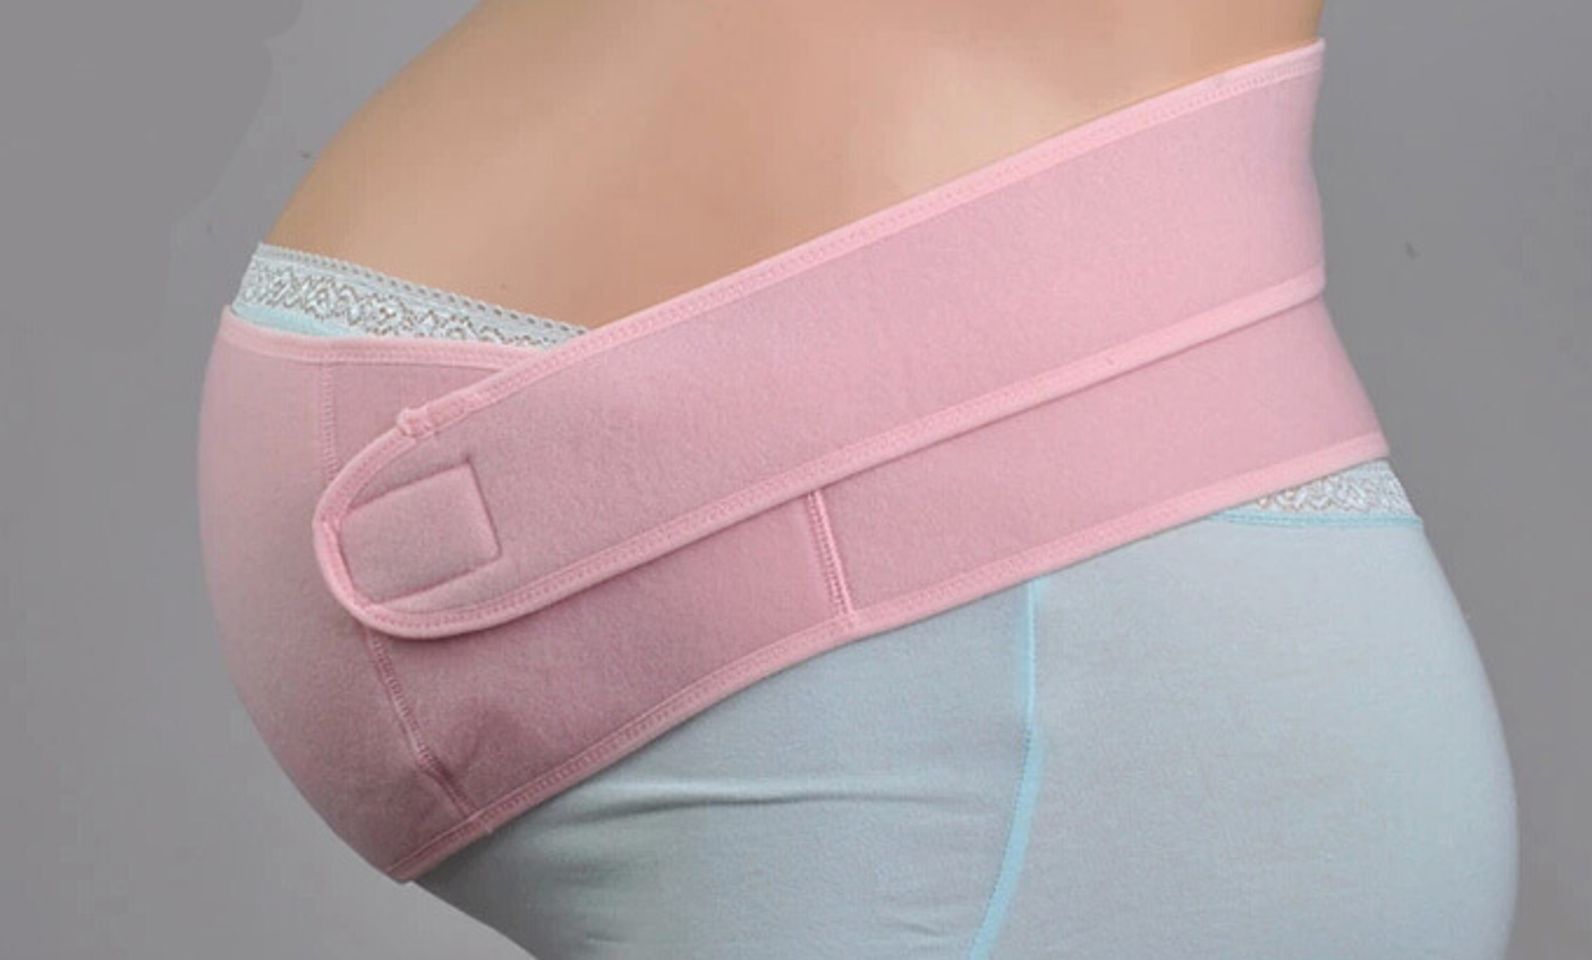  Có thể đeo từ khi 3 tháng cho tới khi sinh, giúp bạn có thể dễ dàng di chuyển